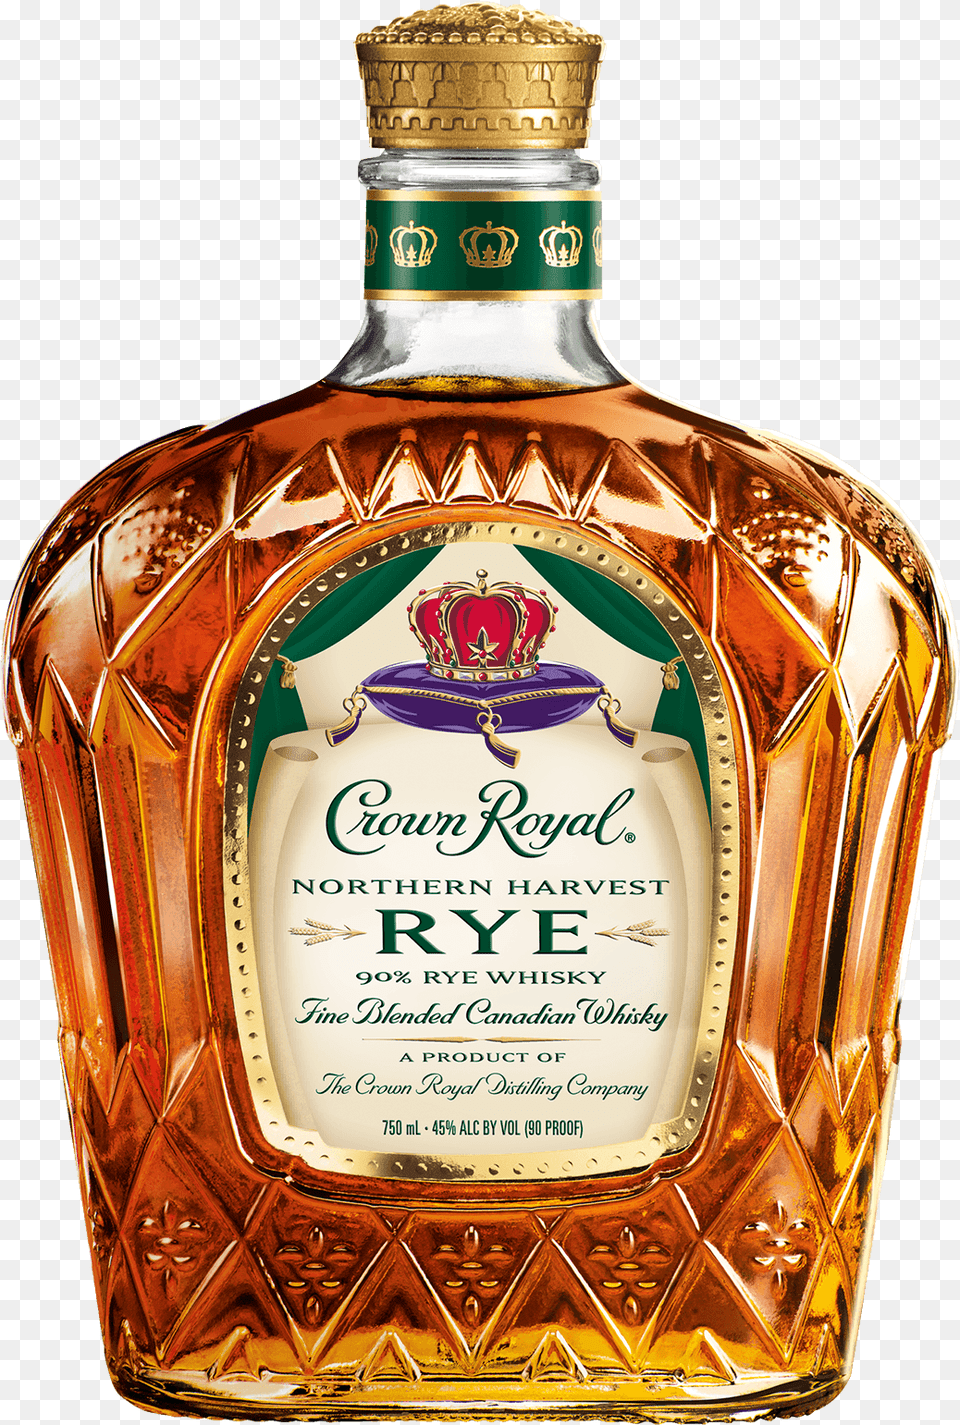 Crown Royal Whisky Crown Royal Harvest Rye, Alcohol, Beverage, Liquor, Bottle Free Transparent Png